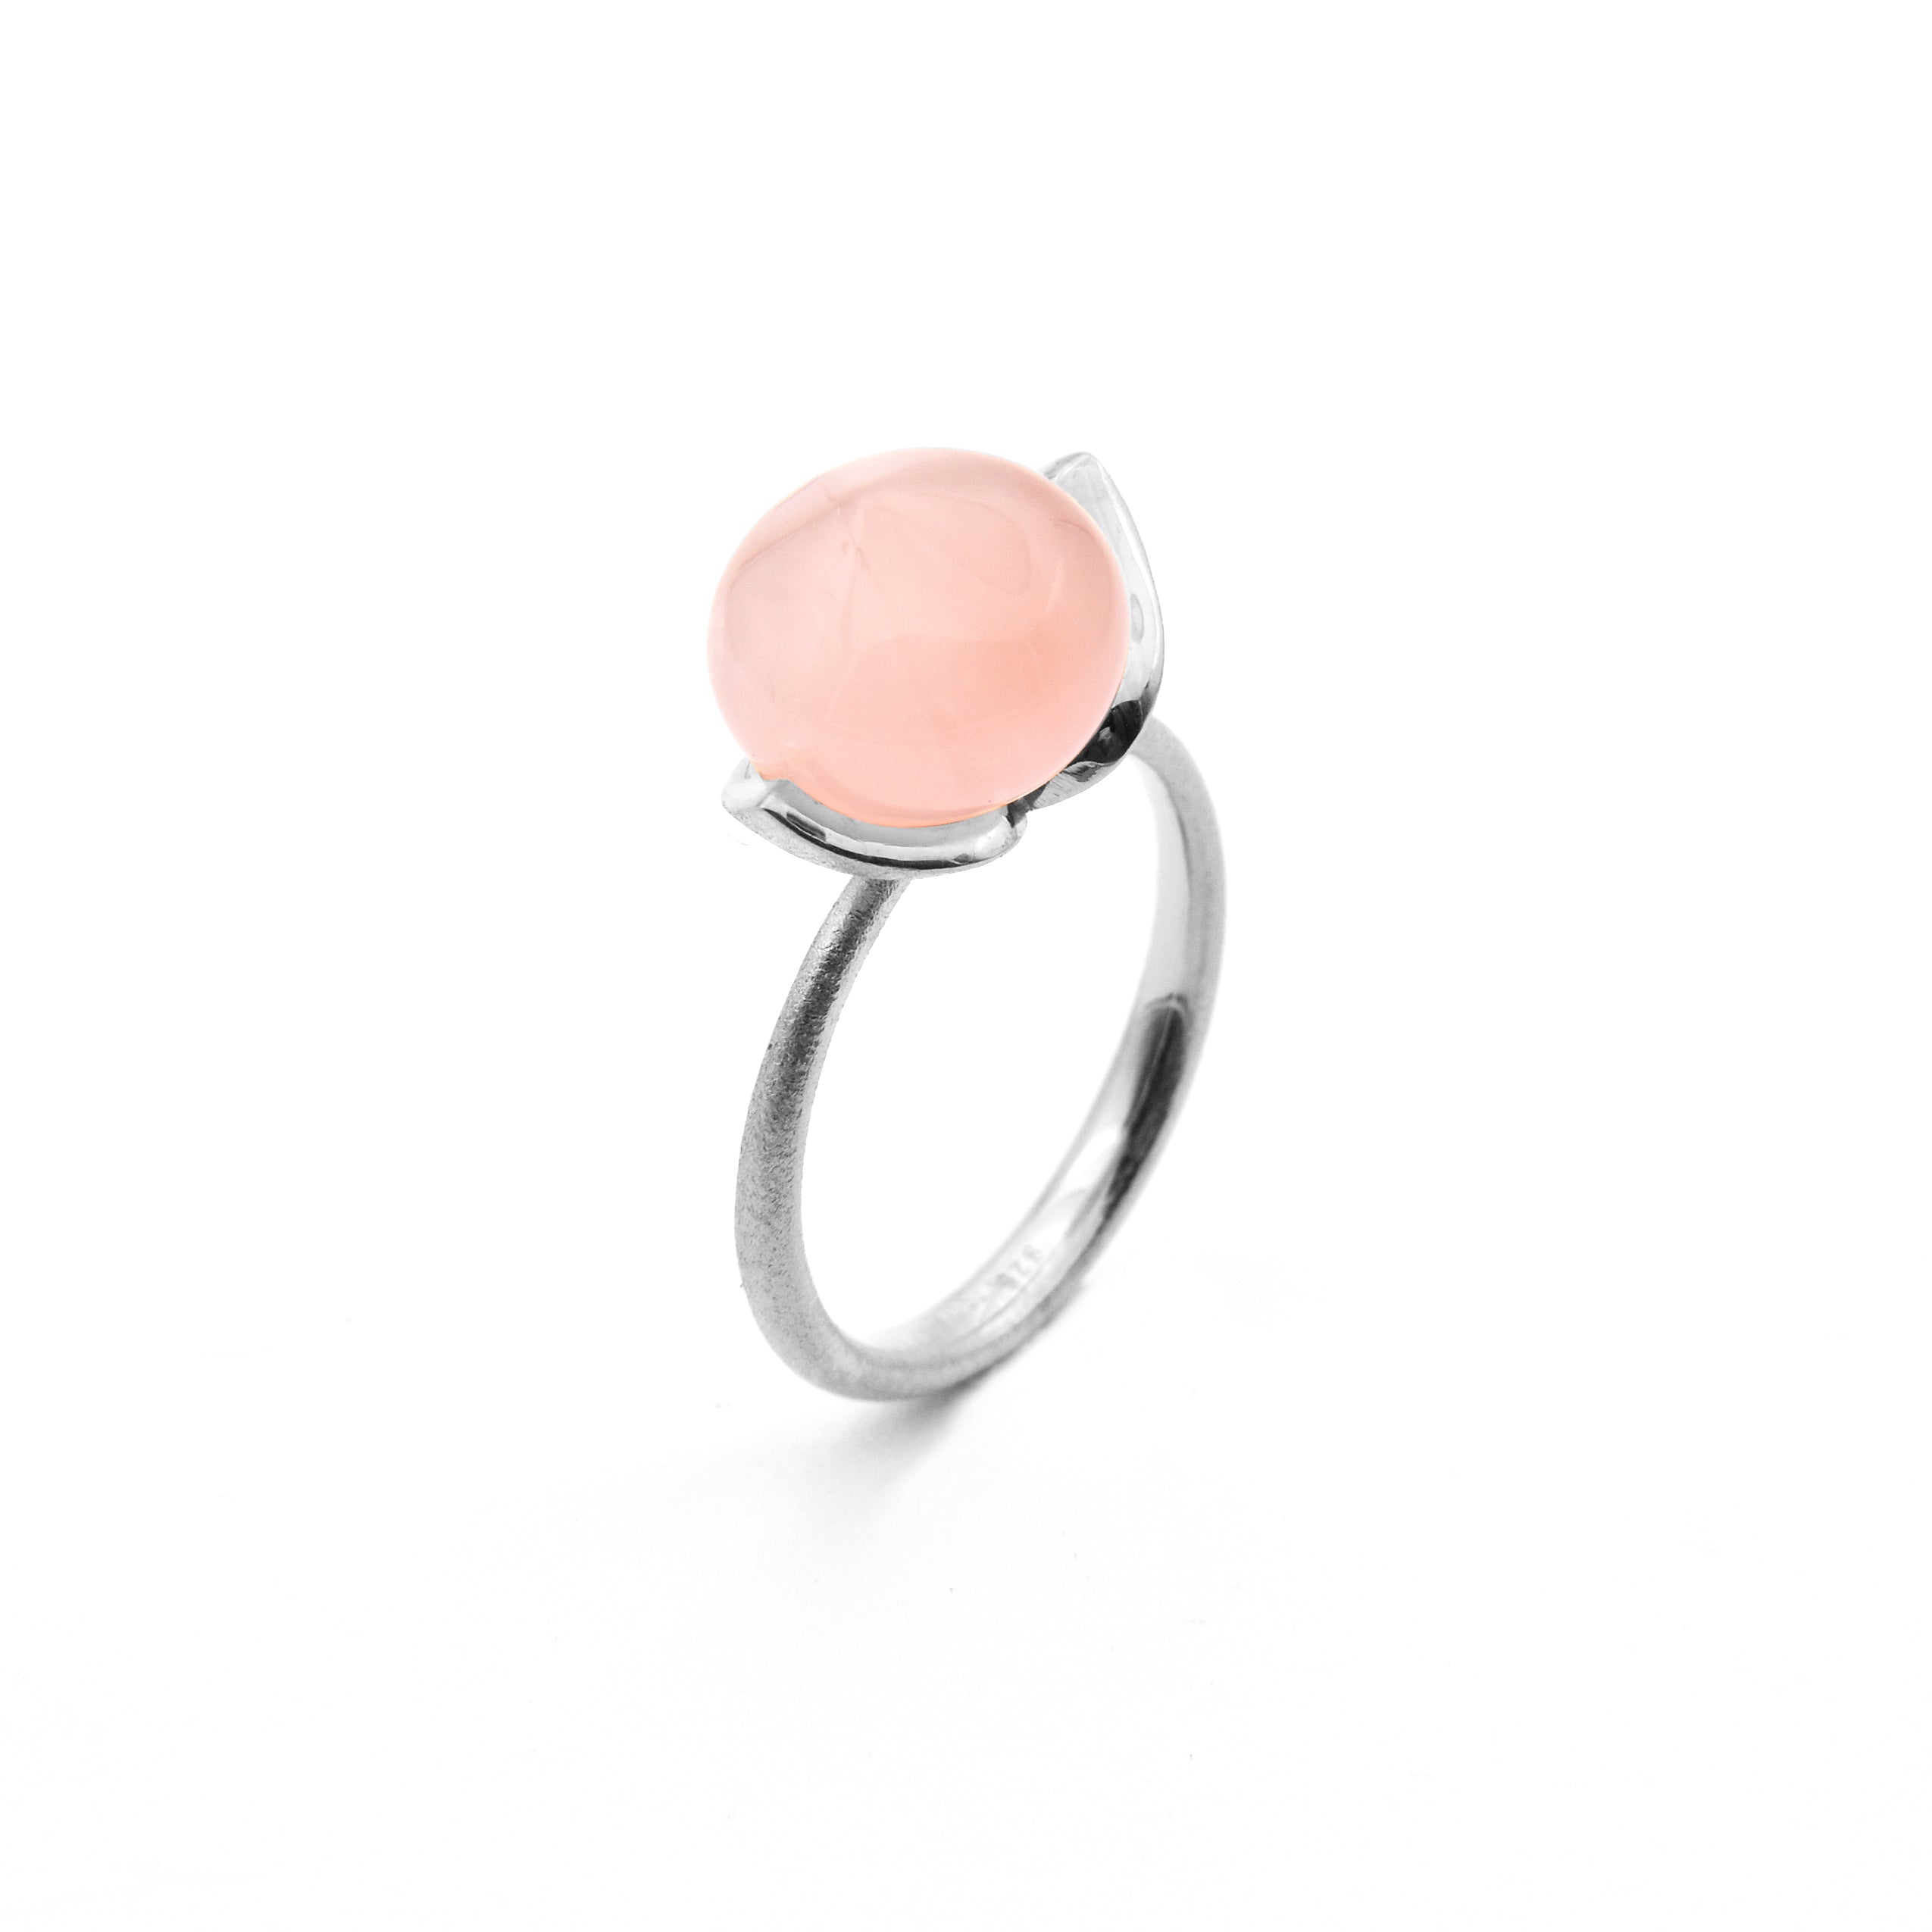 Dolce ring "medium" with rose quartz 925/-